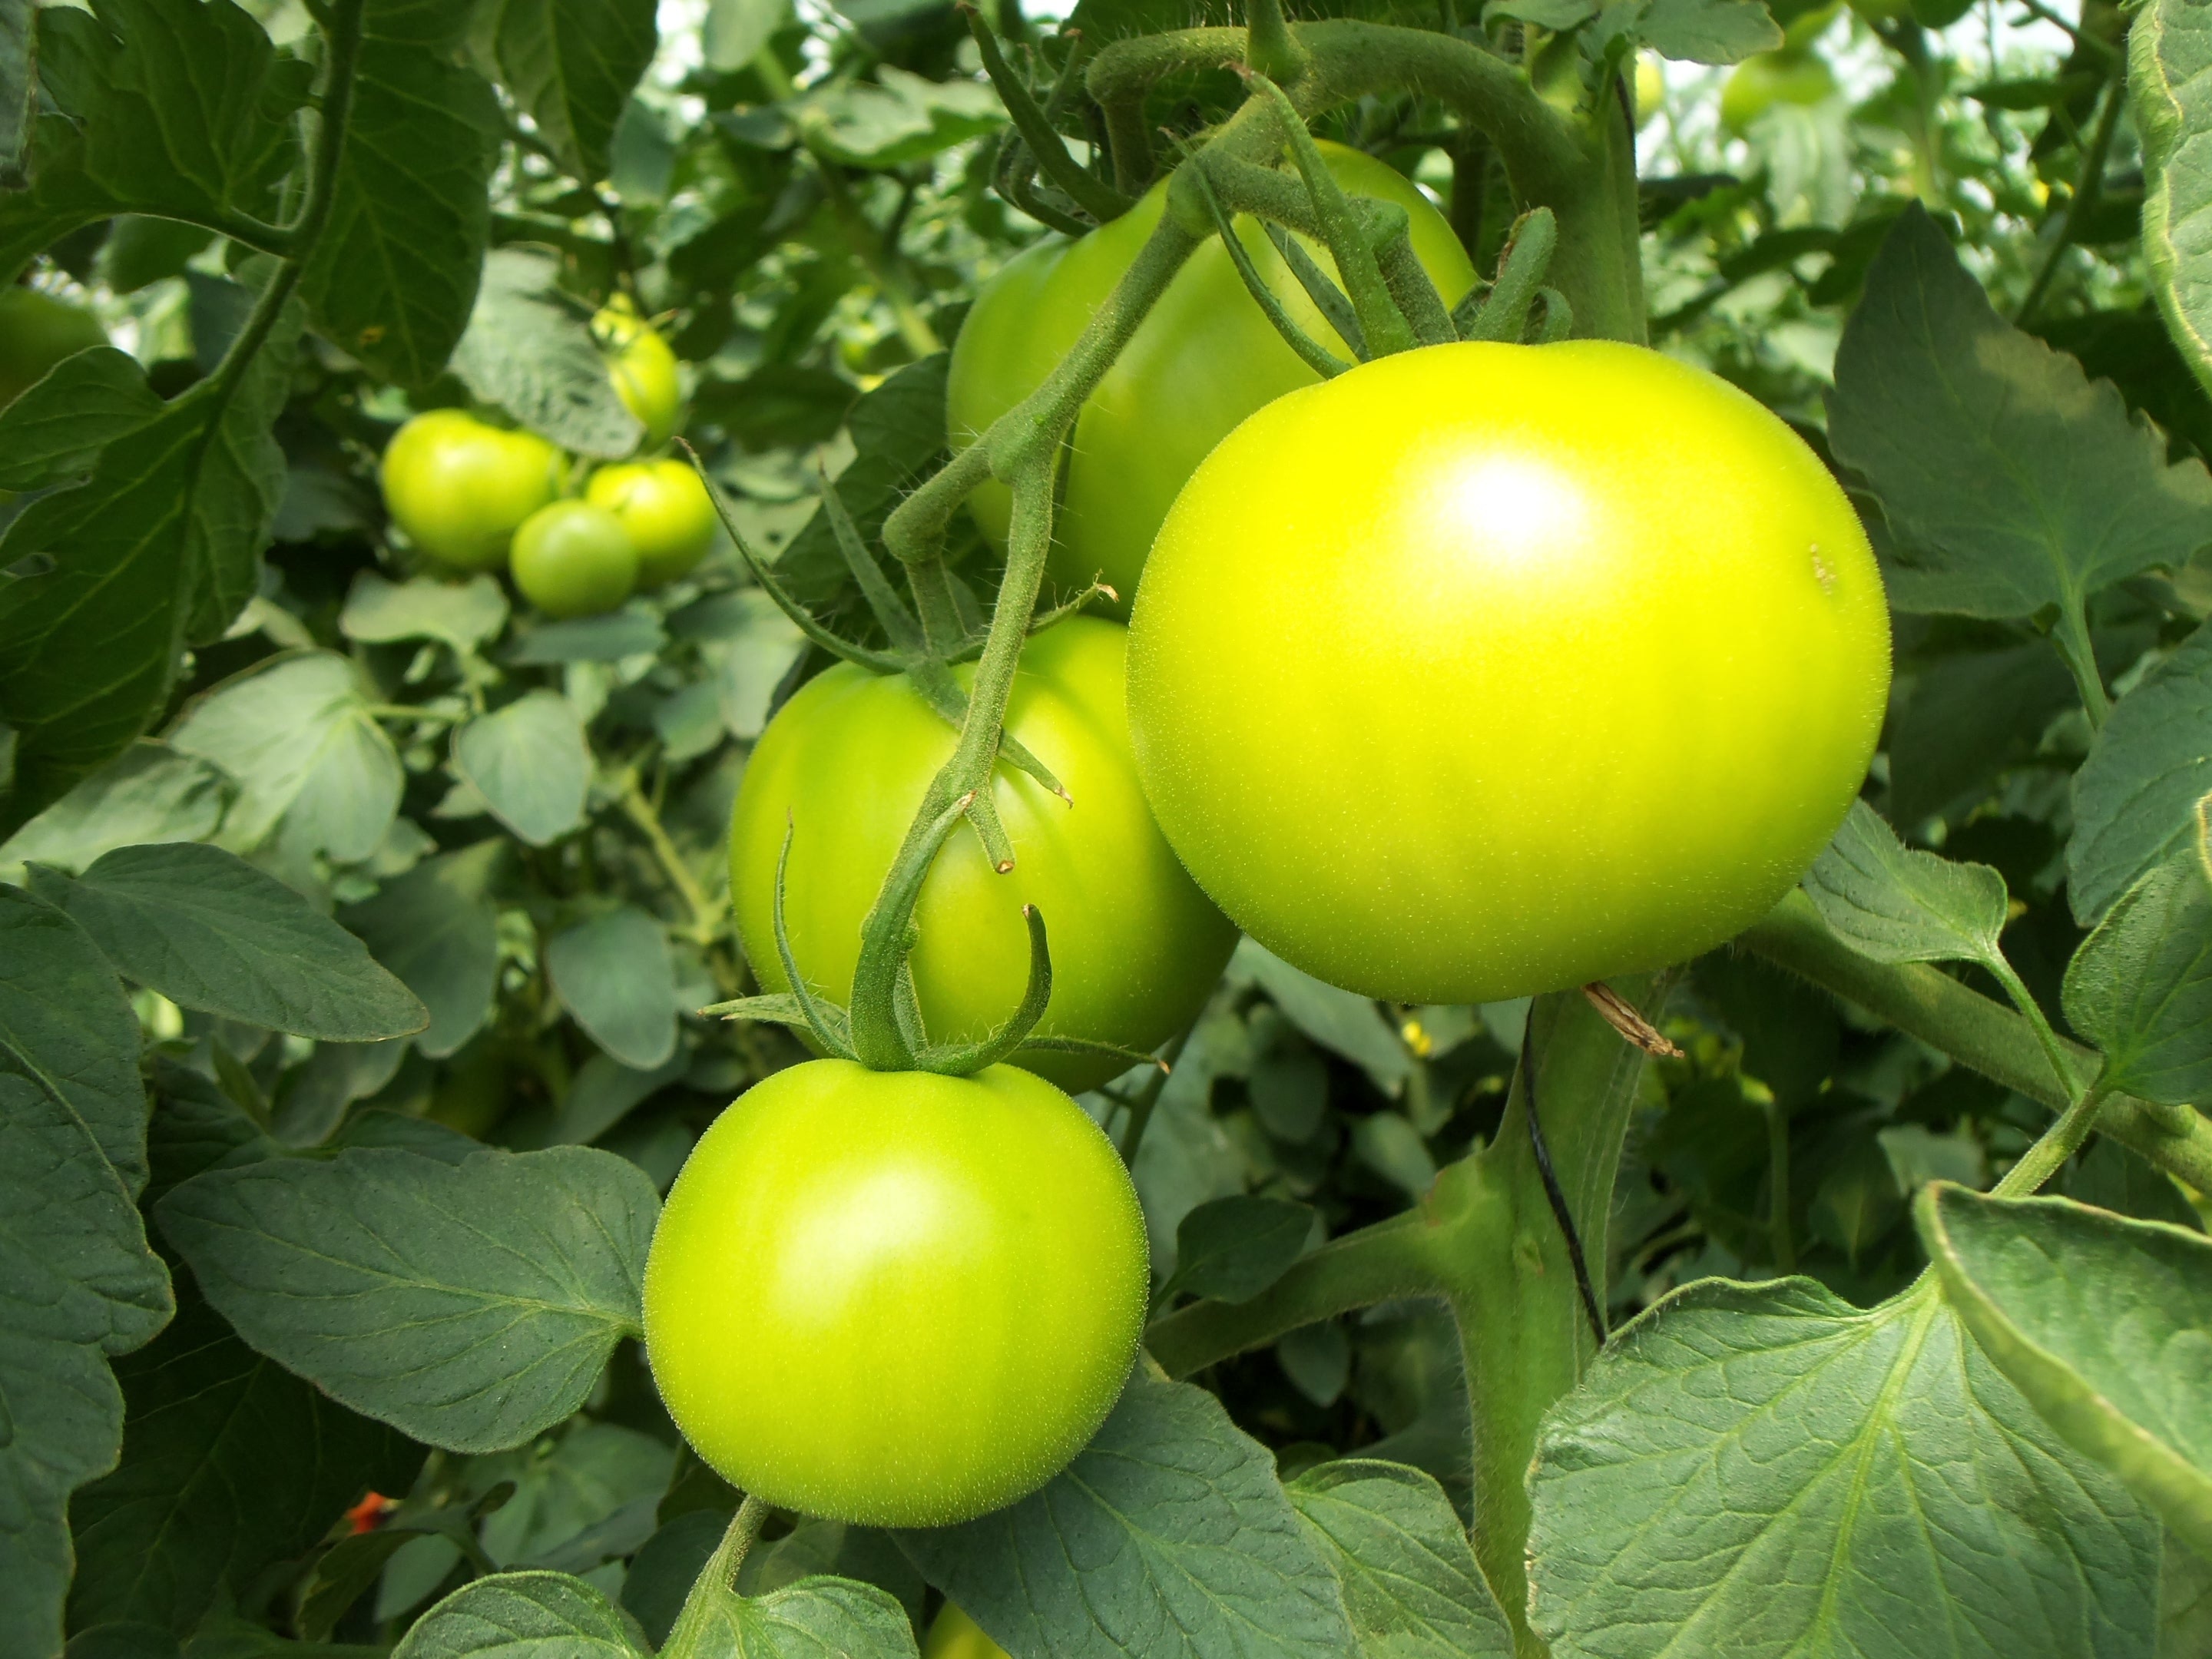 unripe tomatoes